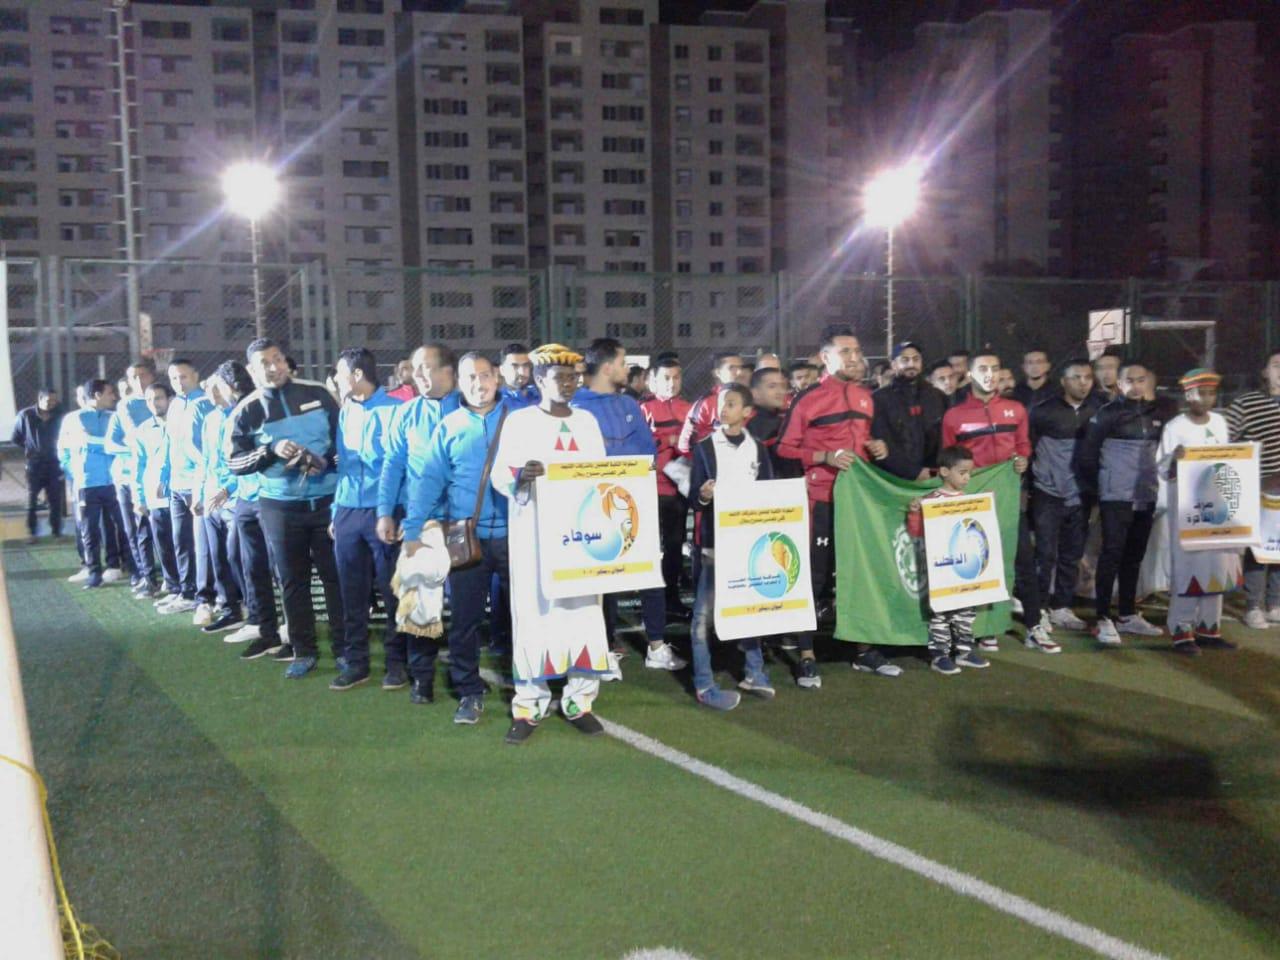   بالصور || انطلاق دورة لكرة القدم الخماسية بمشاركة 13 شركة مياه شرب في أسوان